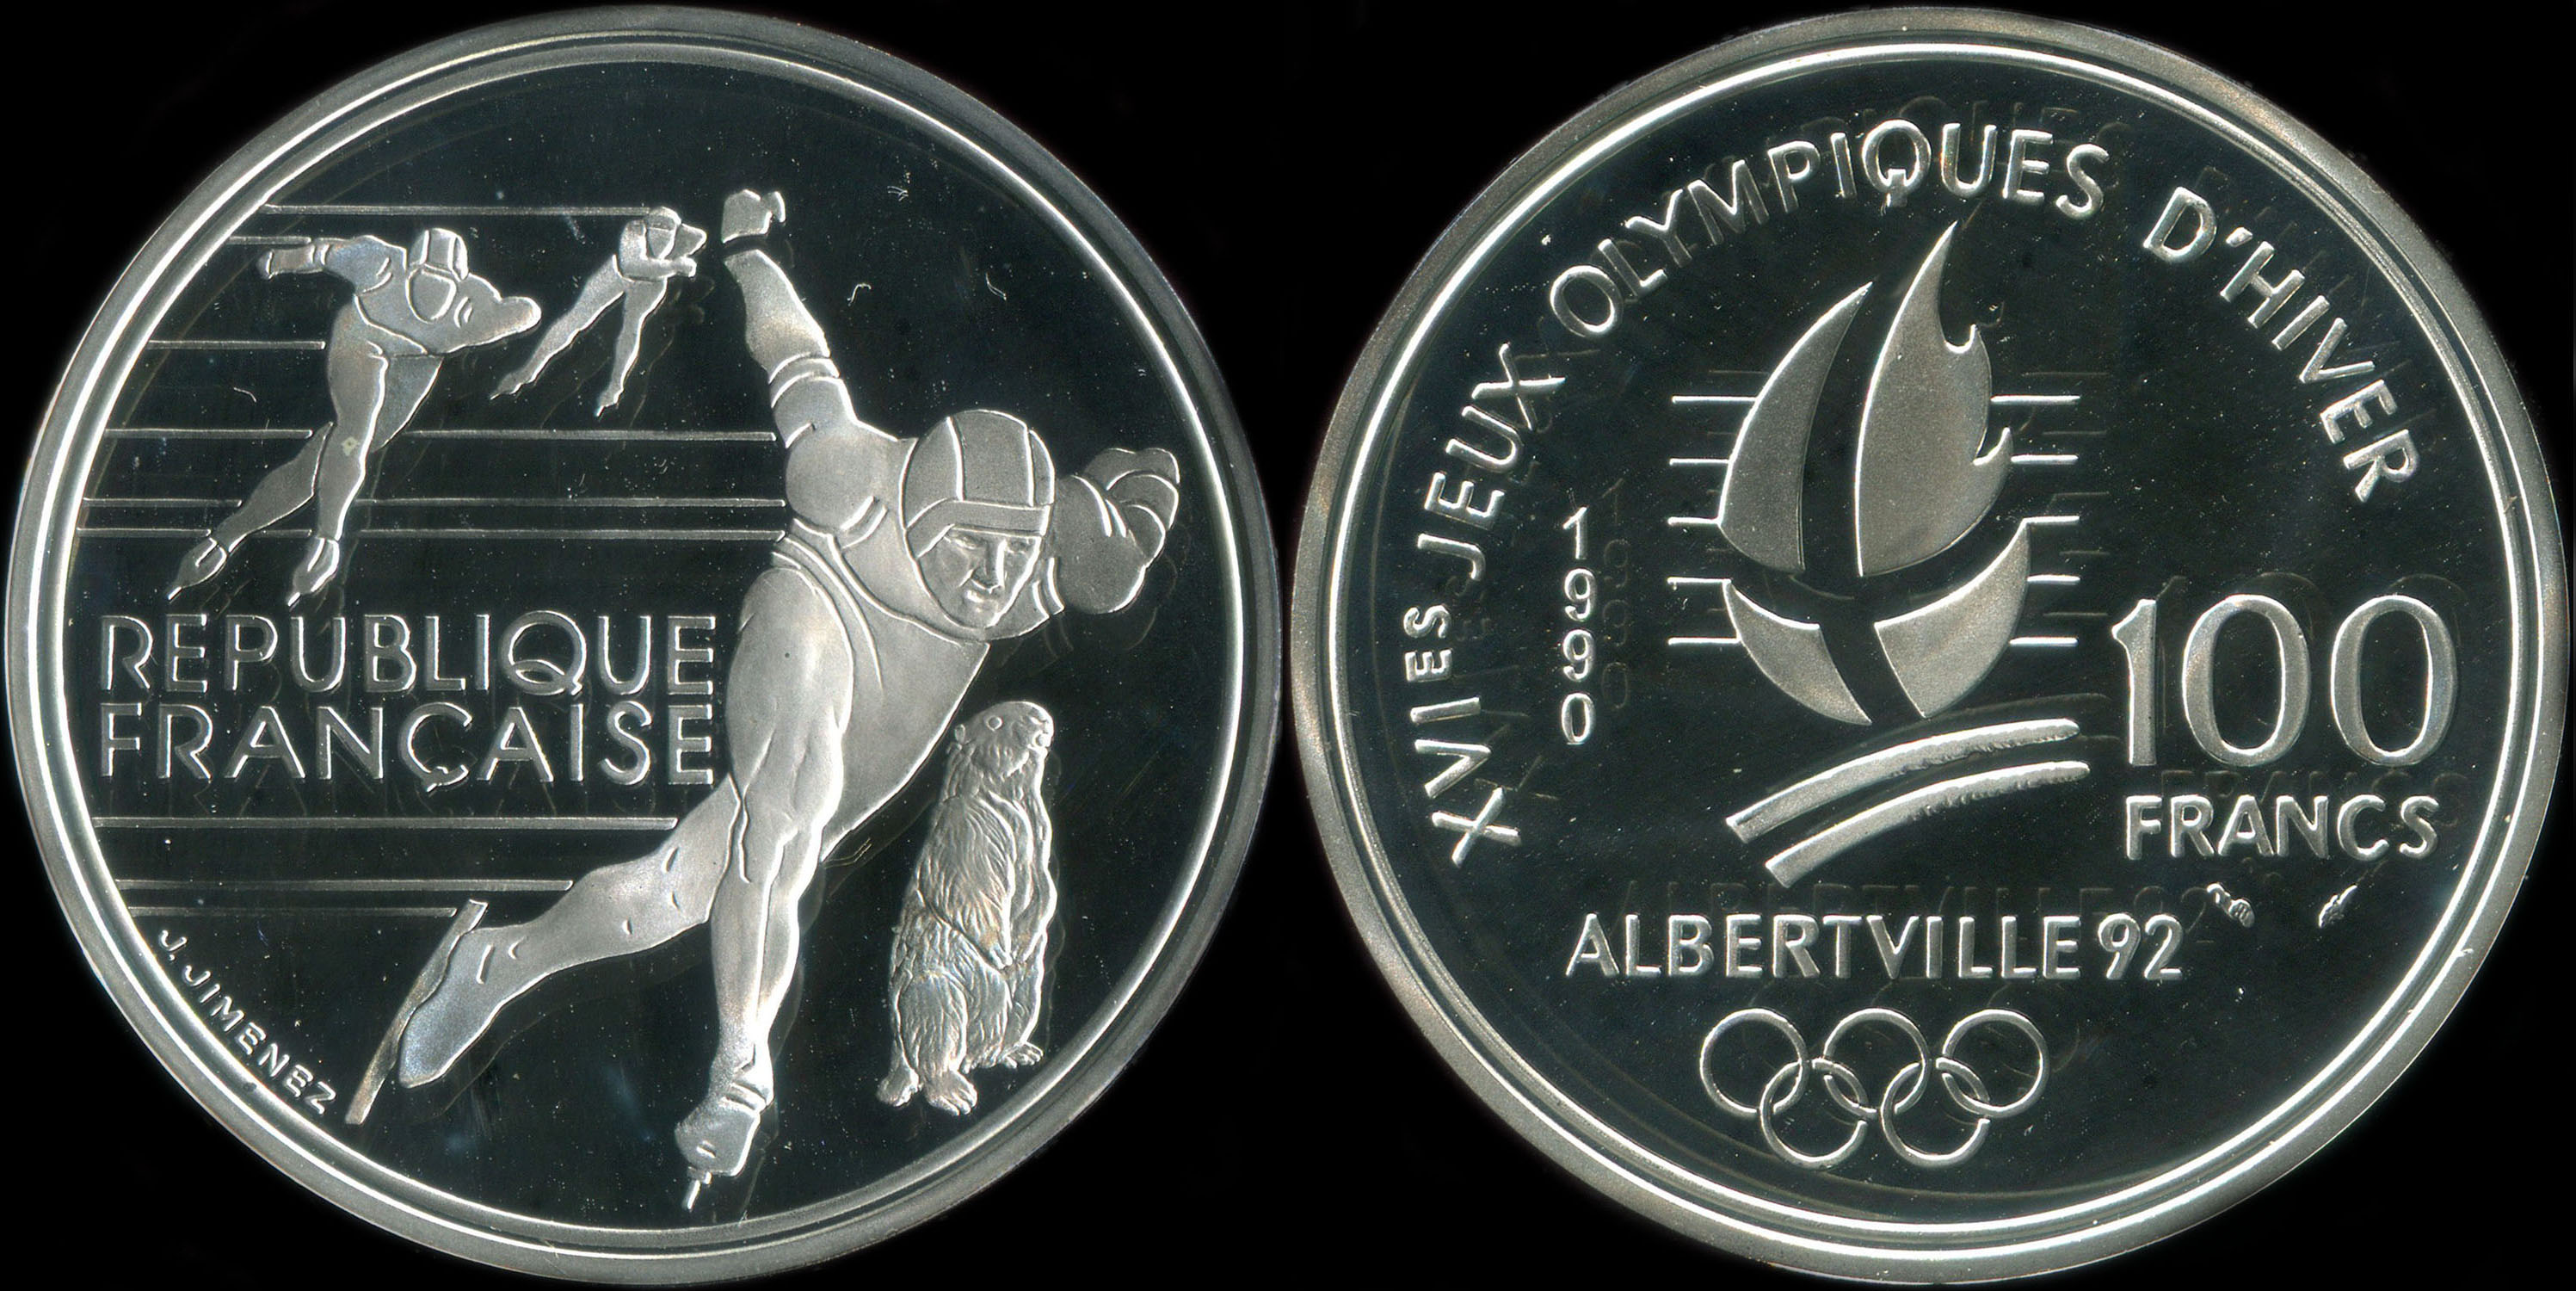 Pièce de 100 francs 1990 - XVIes Jeux Olympiques d'Hiver - Albertville 92 - Patinage de vitesse - Marmotte